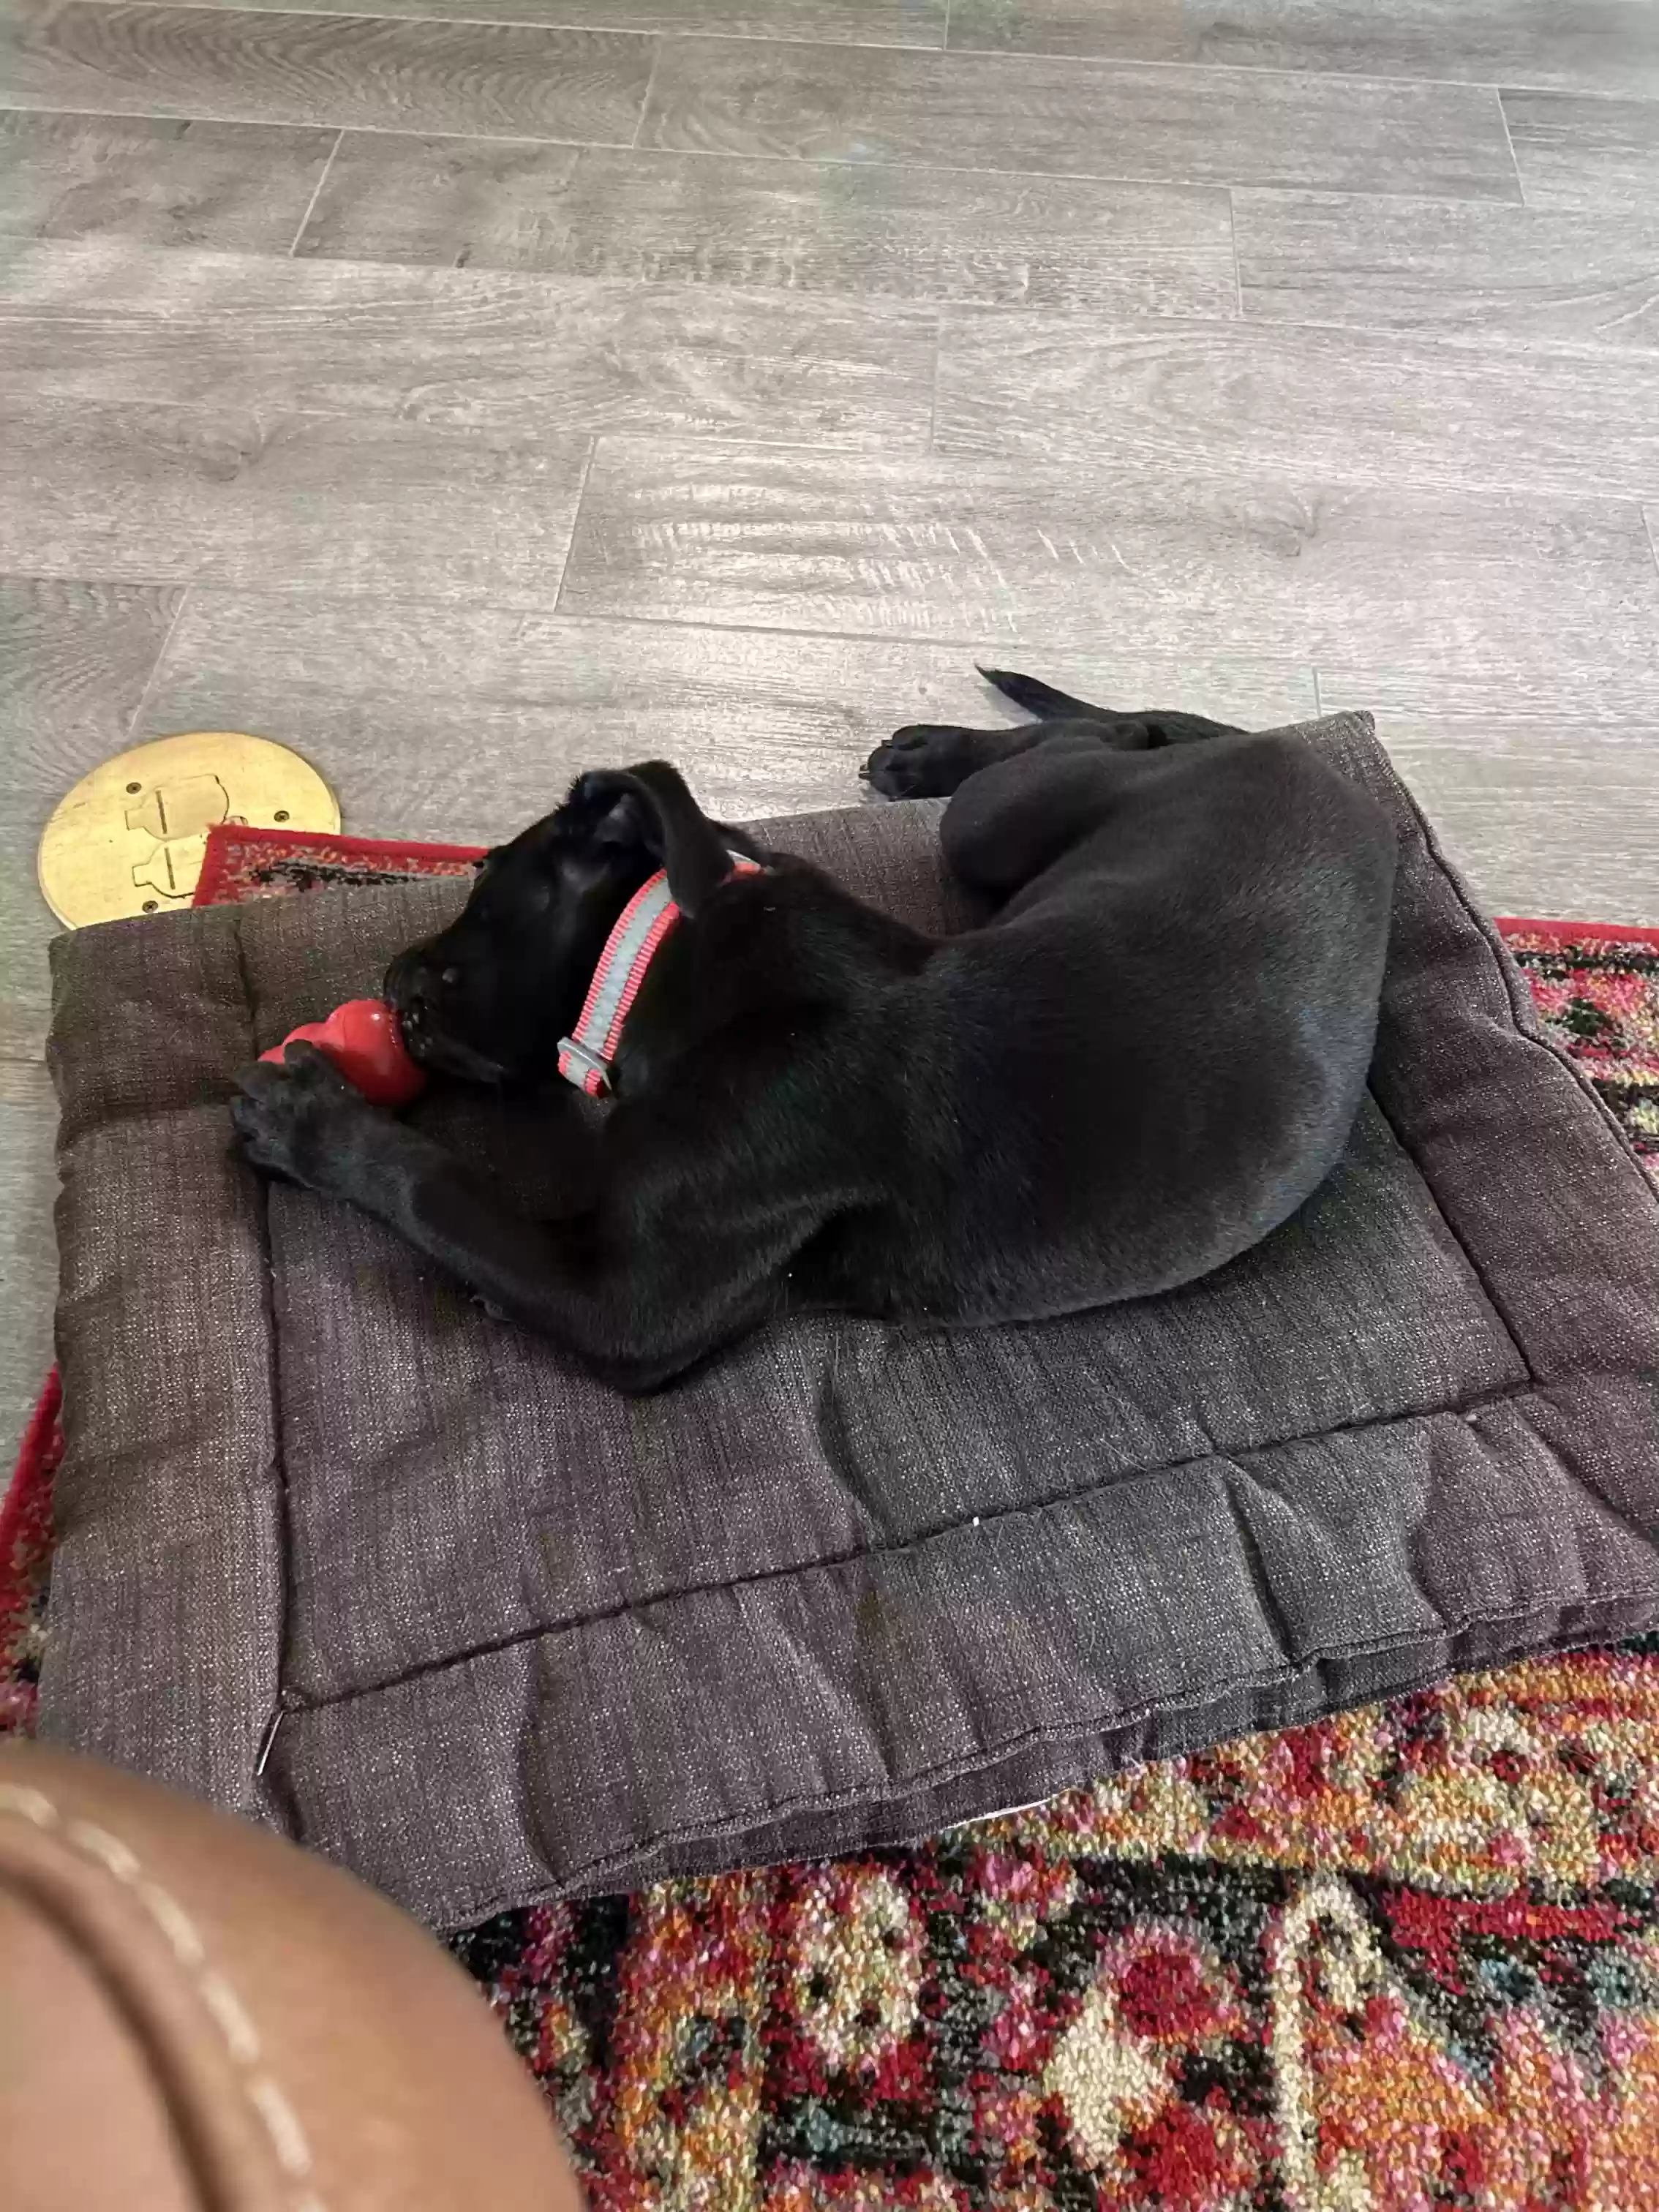 adoptable Dog in Bertram,TX named Gus